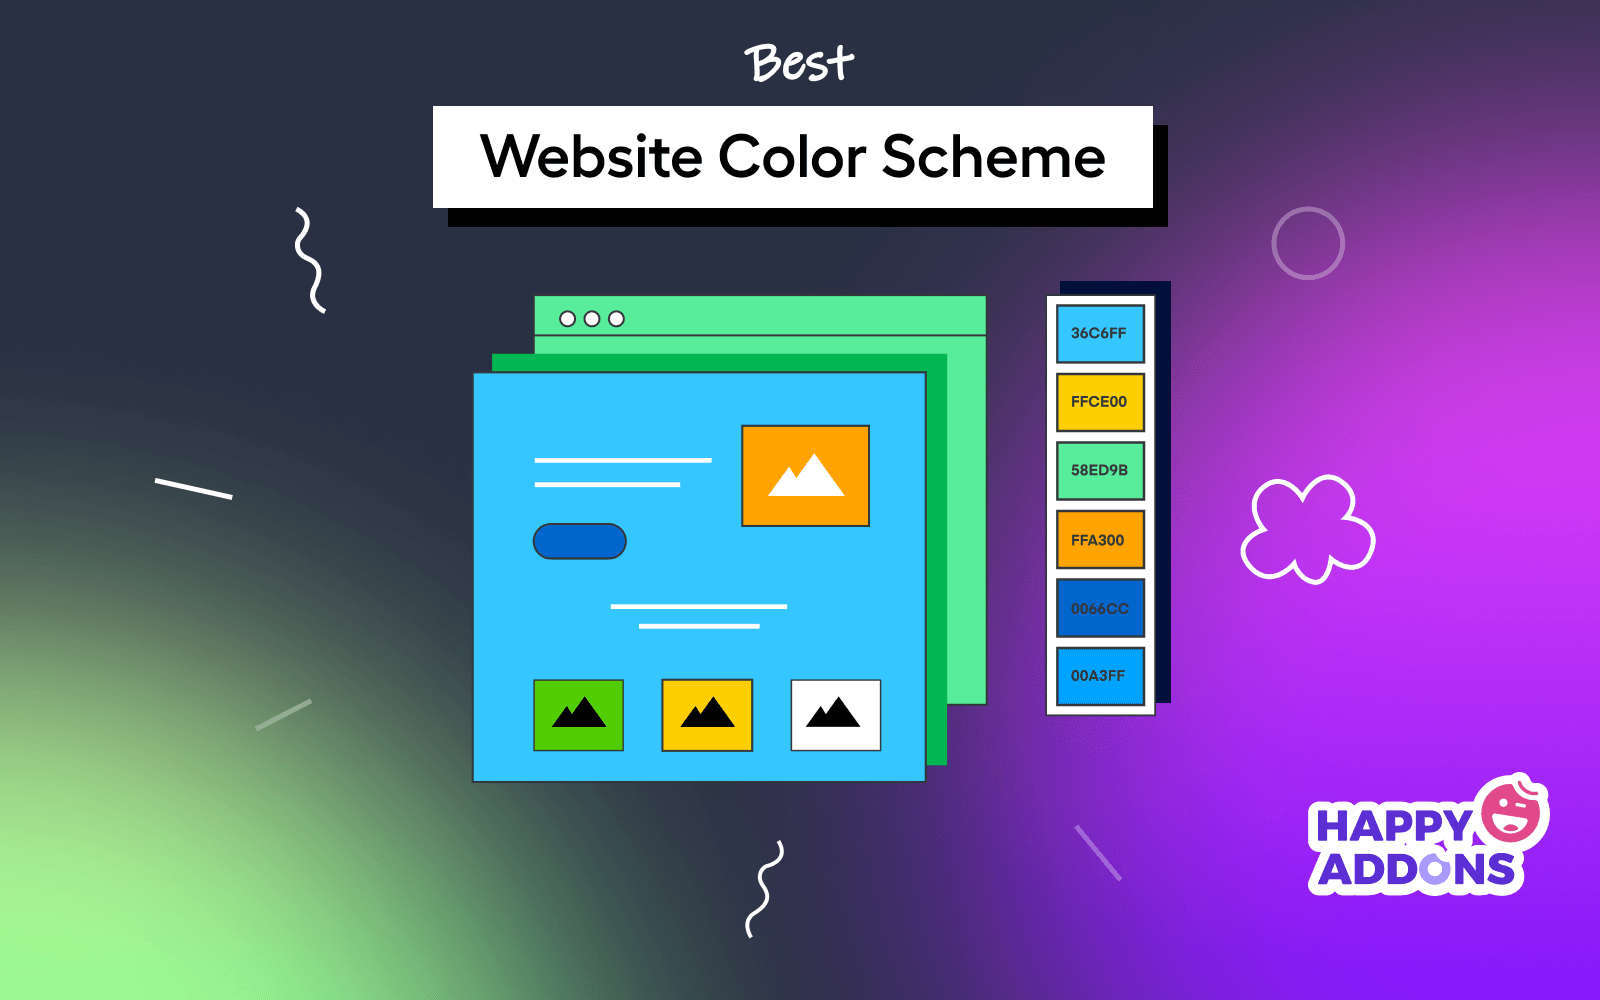 Best Website Color Scheme for Modern Web Design